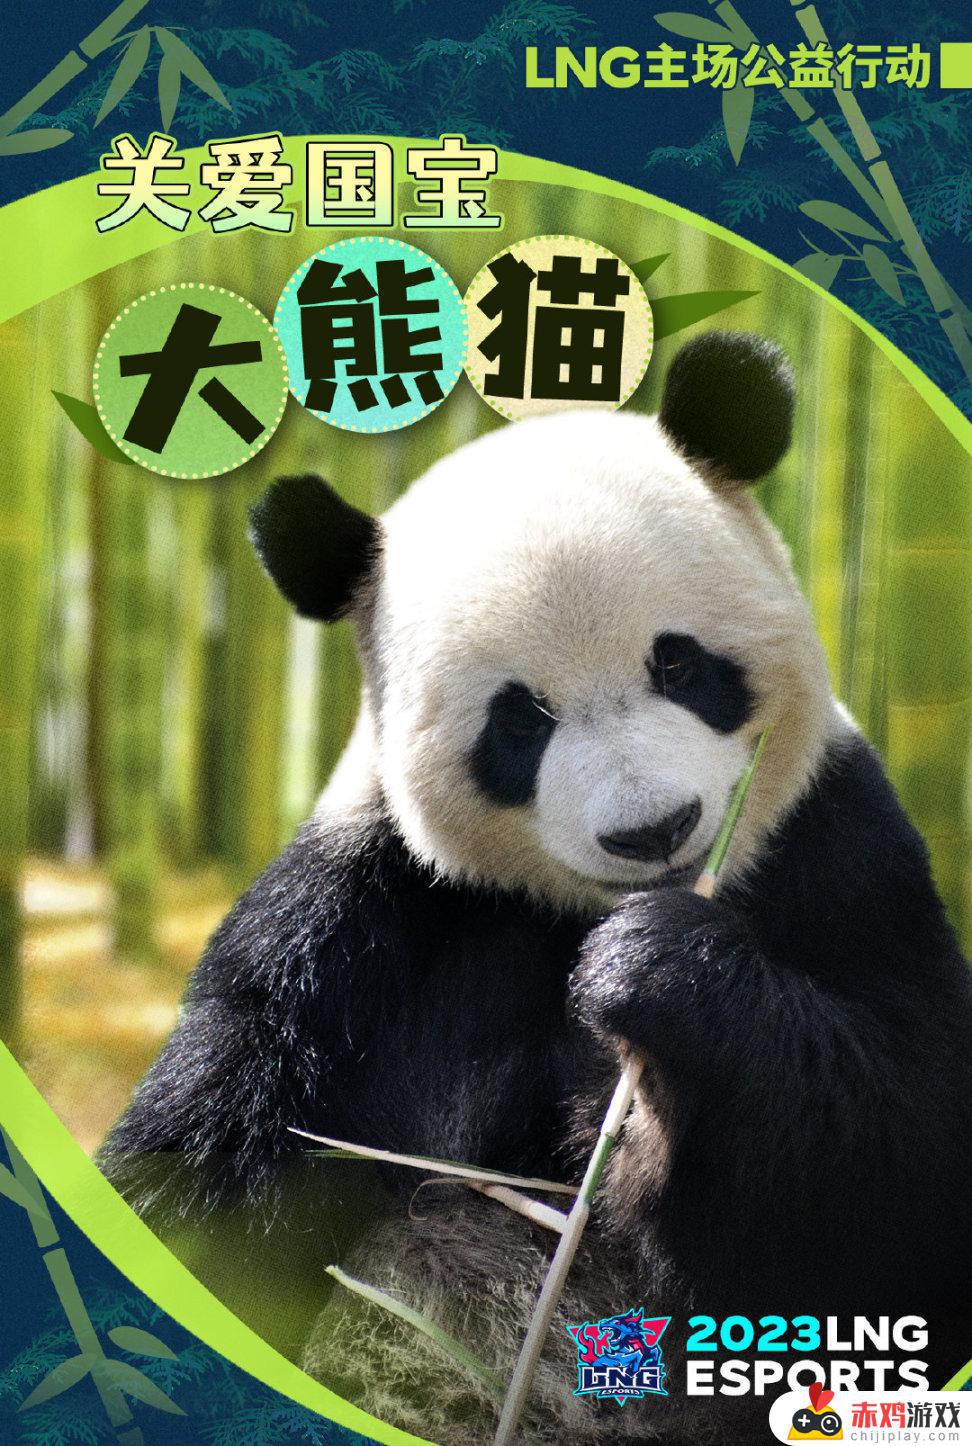 联盟日报:明日LNG门票收益捐赠大熊猫中心;UP无缘季后赛